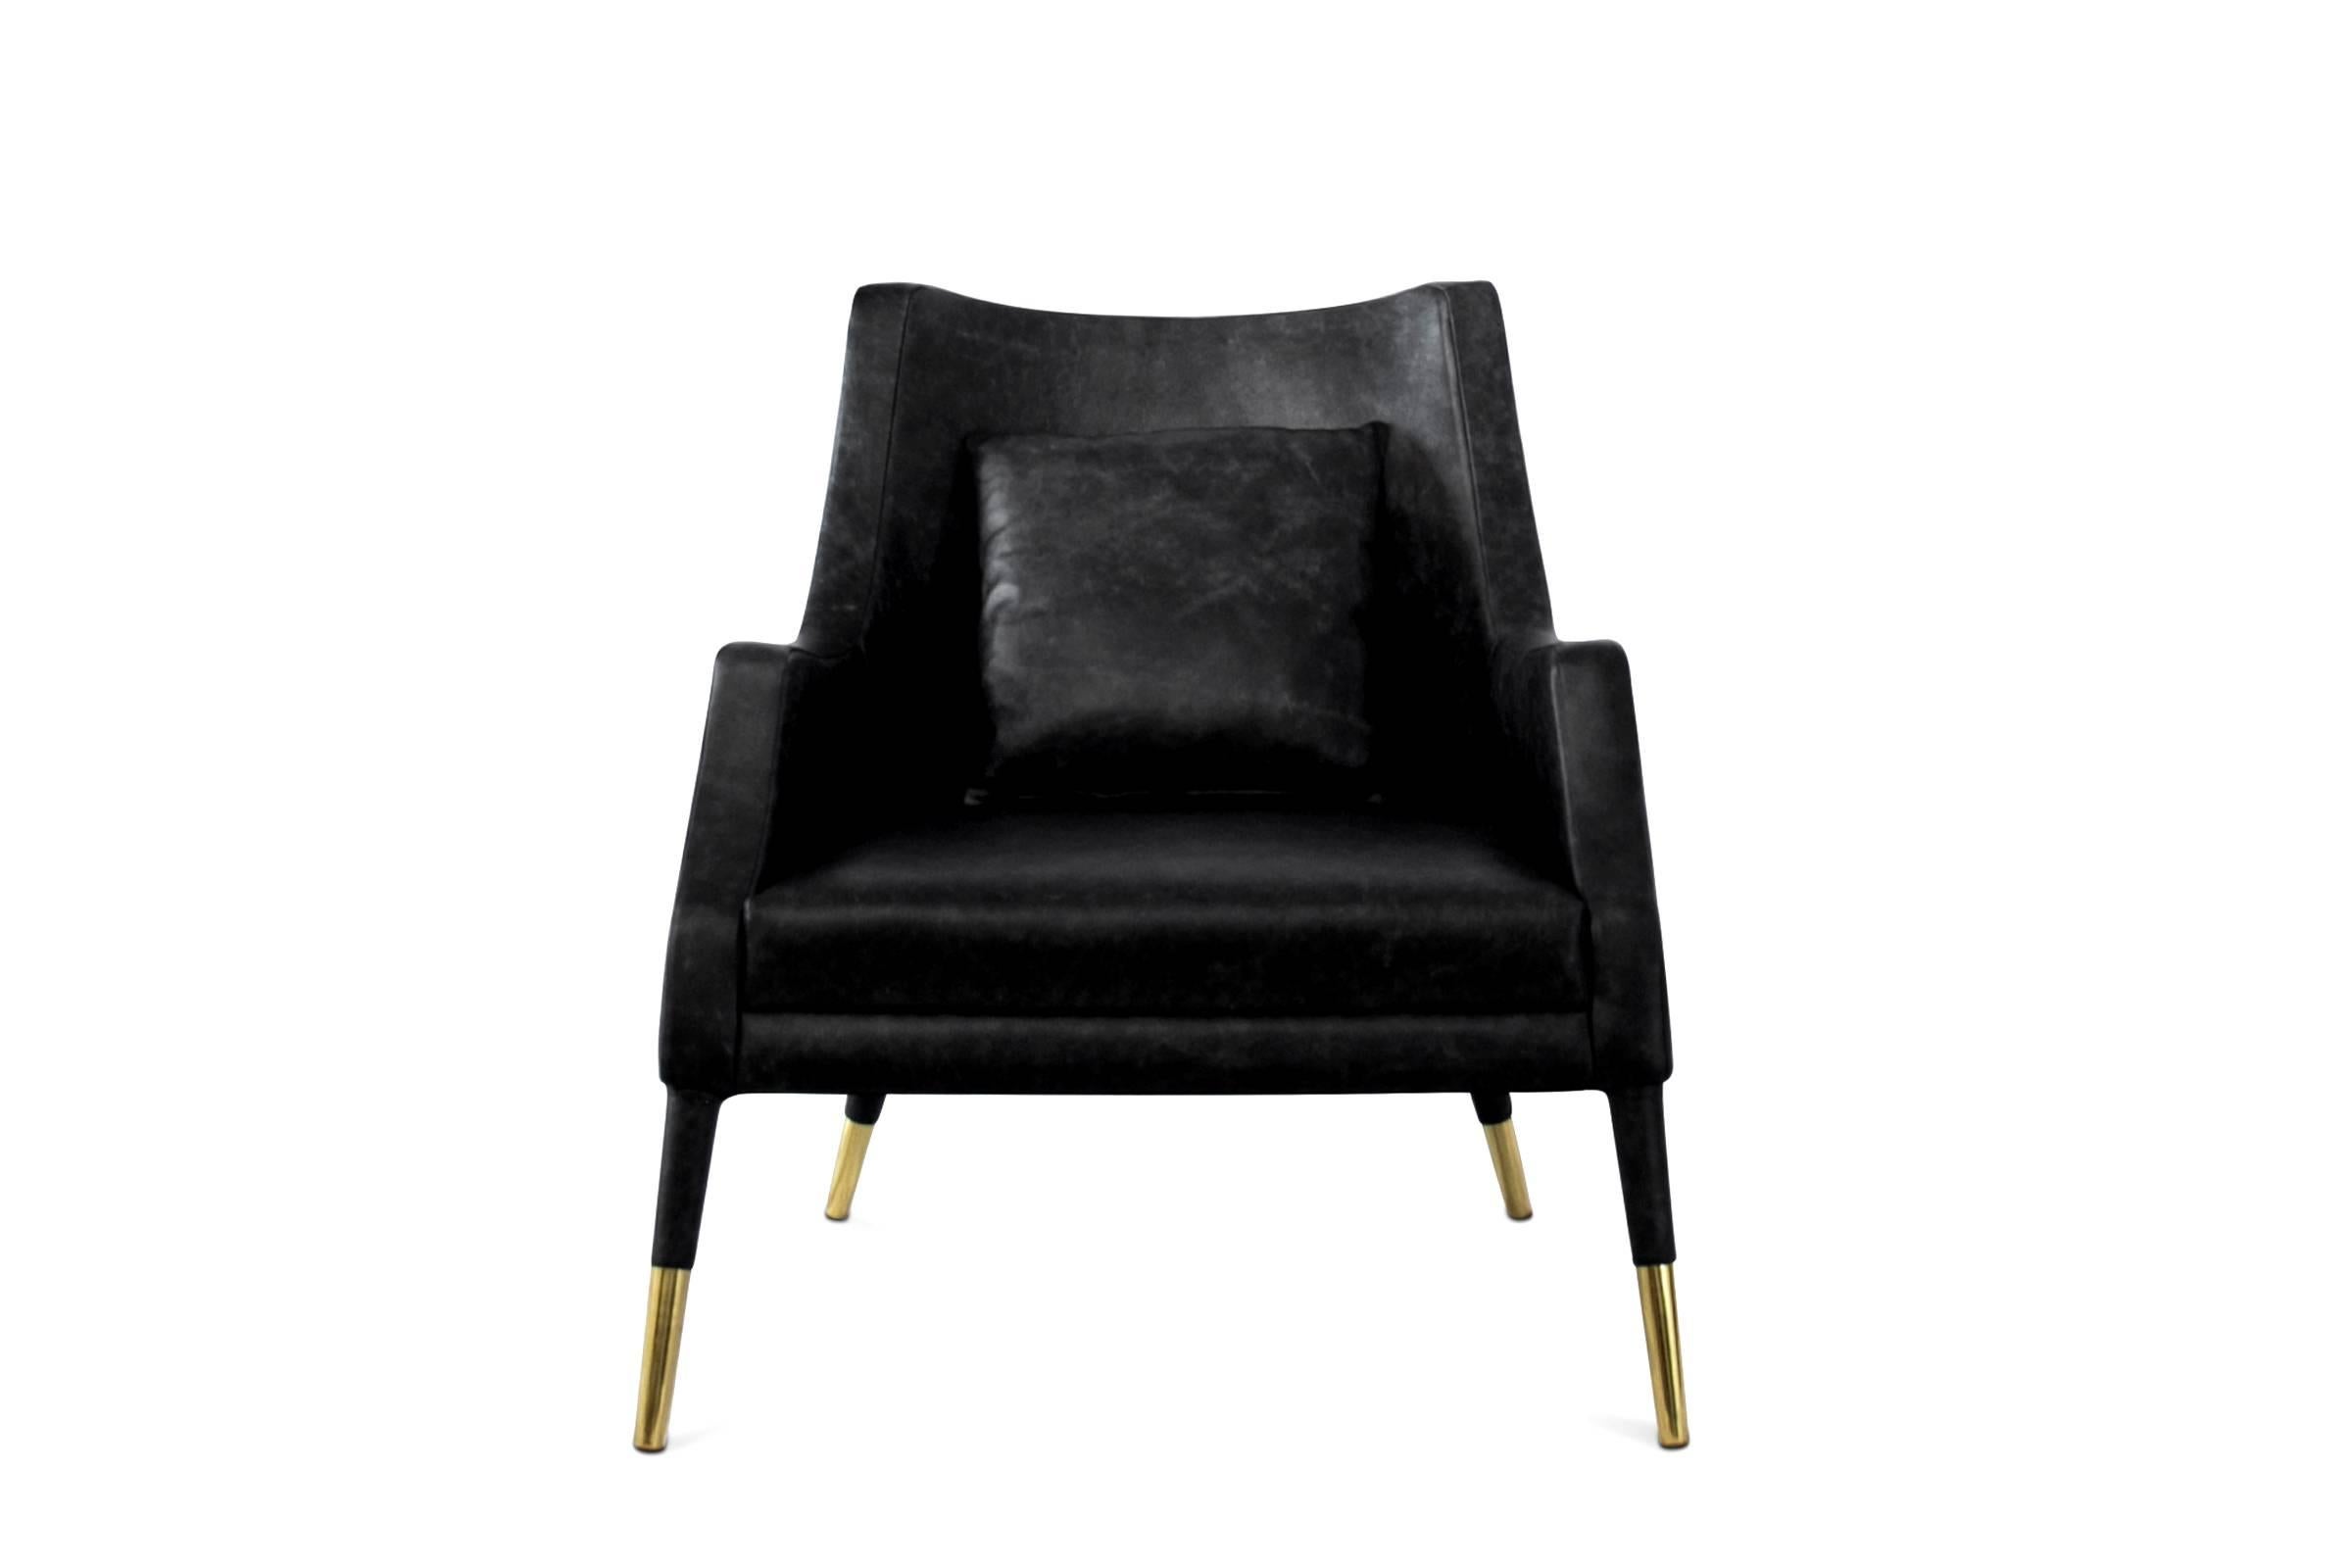 Fauteuil lounge noir avec structure en bois, rembourré
et recouvert de cuir noir véritable mat Grade A.
Avec en laiton massif en finition polie. Coussin inclus. 
